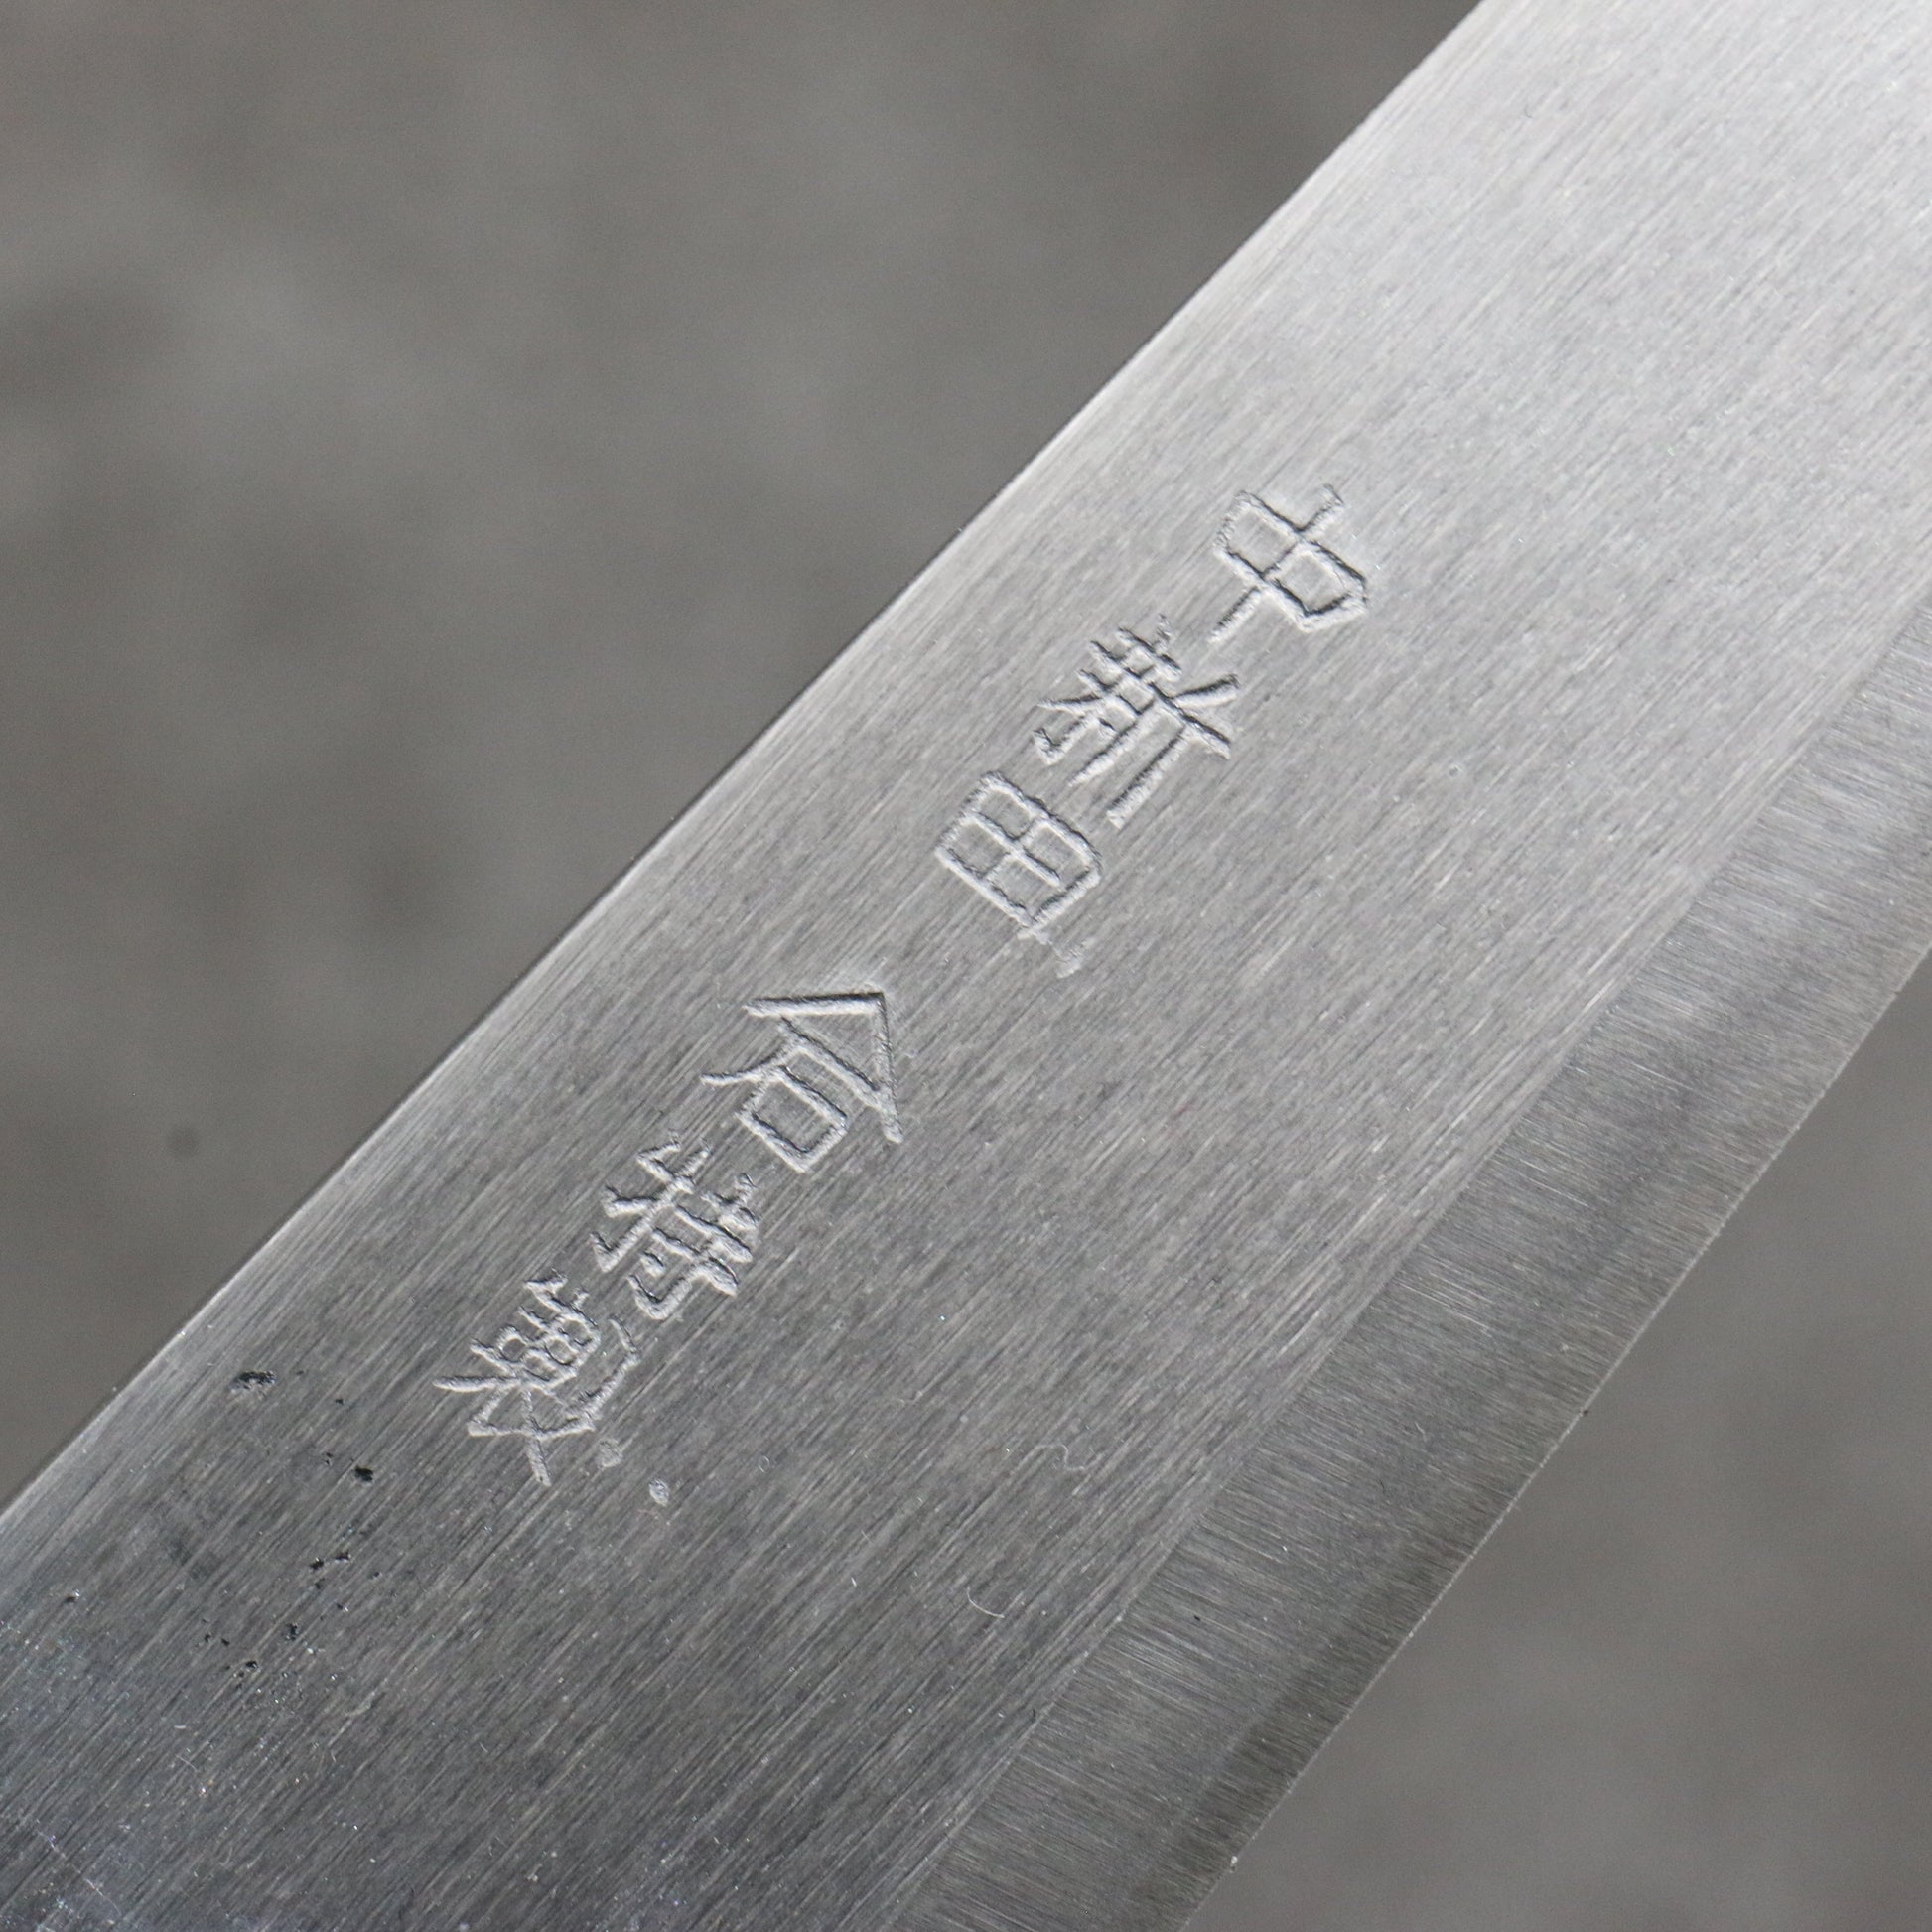 中新田 白ニ鋼 磨き仕上げ ペティーナイフ 120mm 朴柄 - 清助刃物